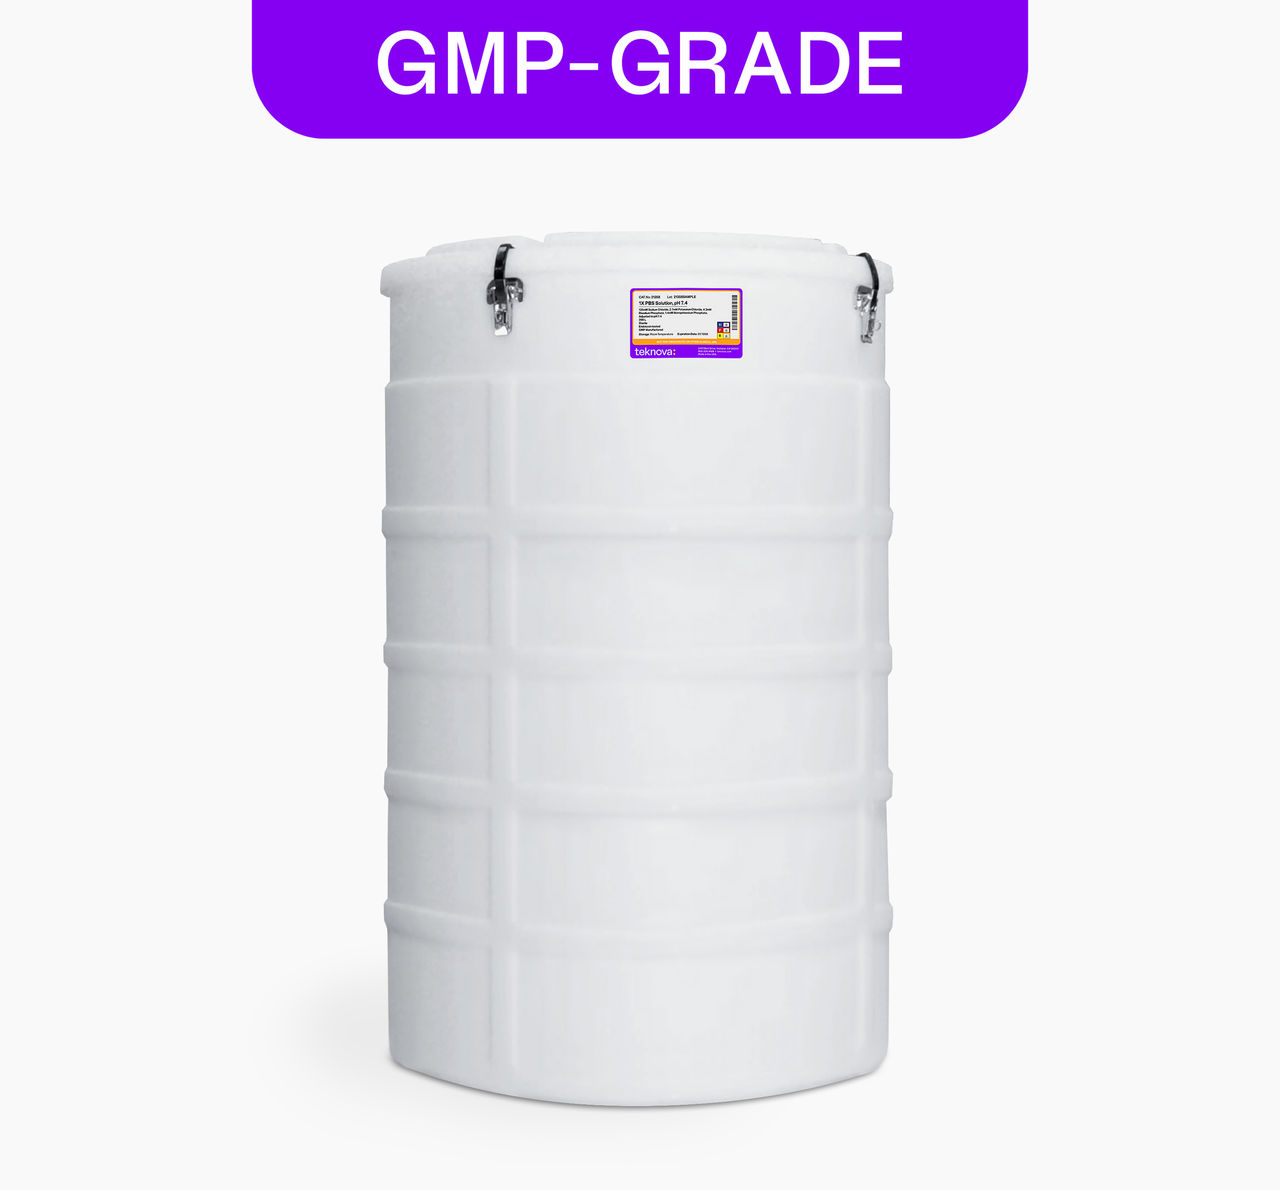 1X PBS Solution, pH 7.4, 200L bag, GMP-grade